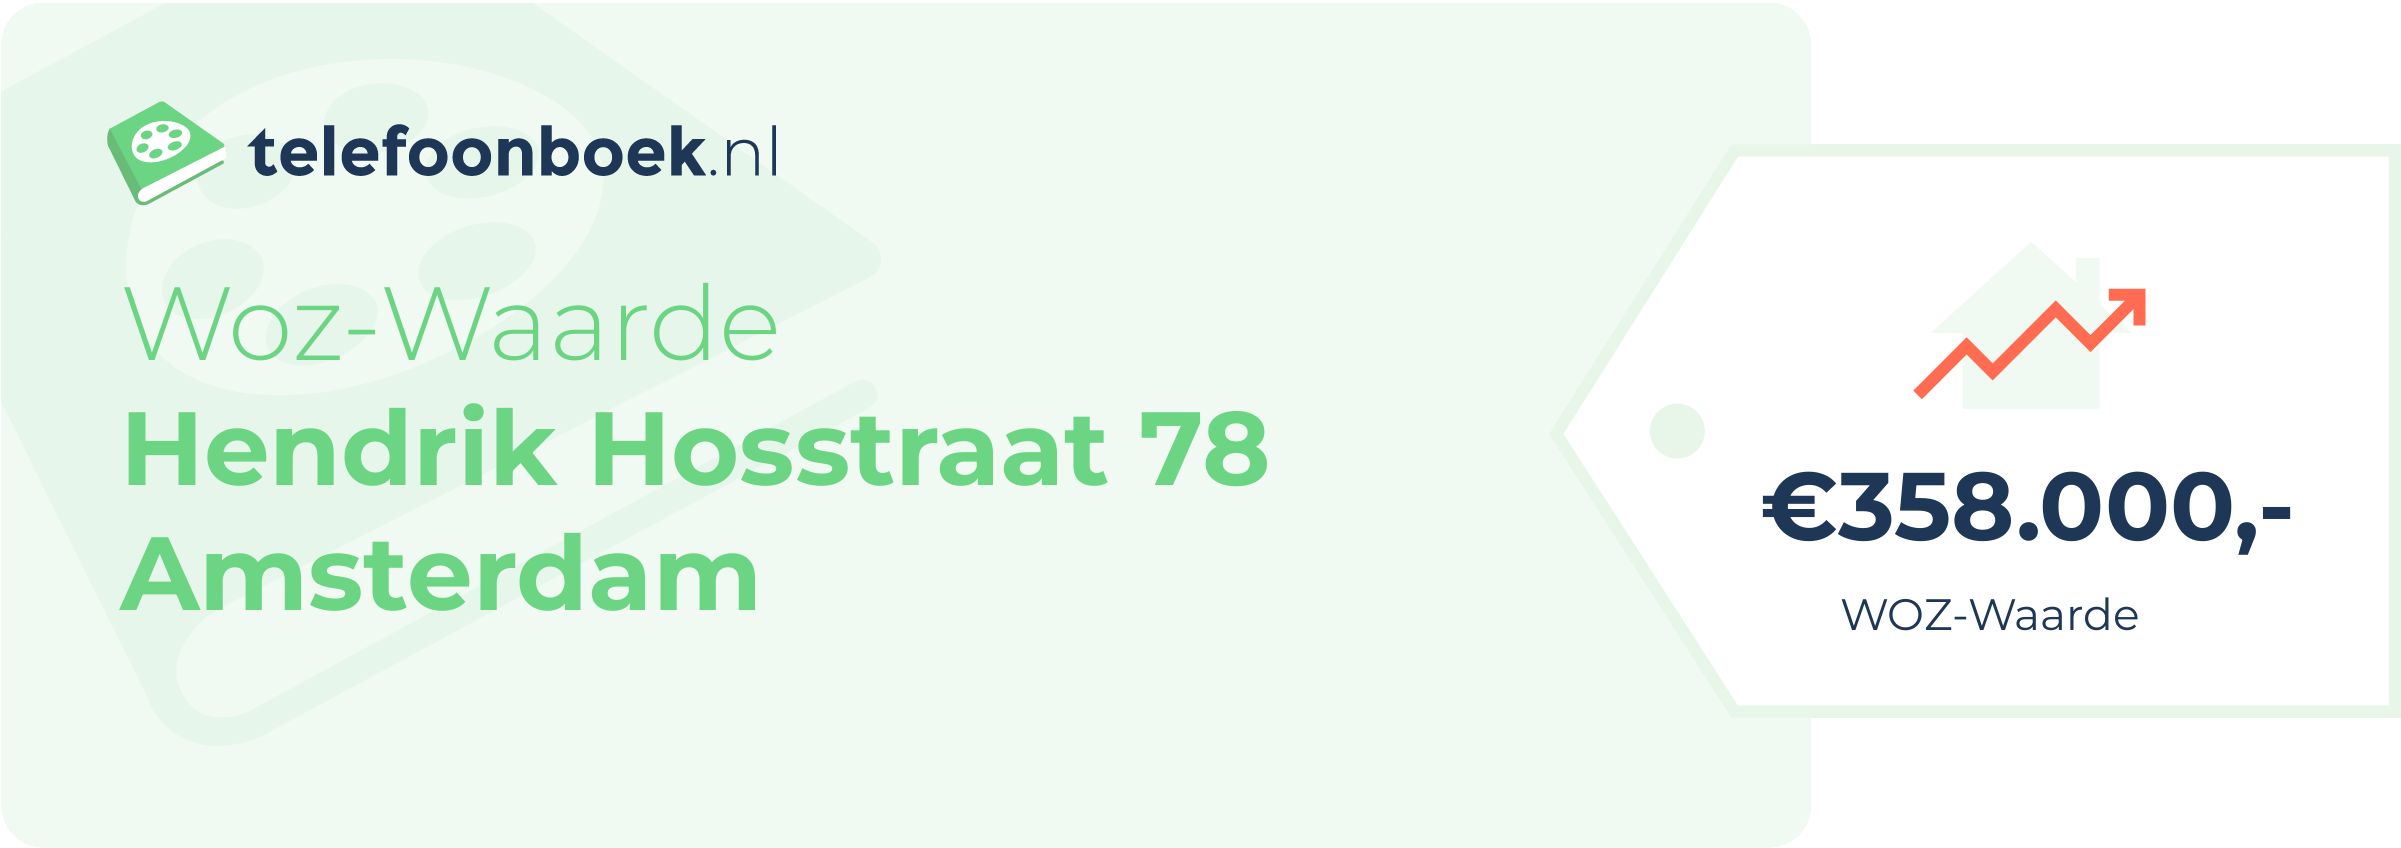 WOZ-waarde Hendrik Hosstraat 78 Amsterdam